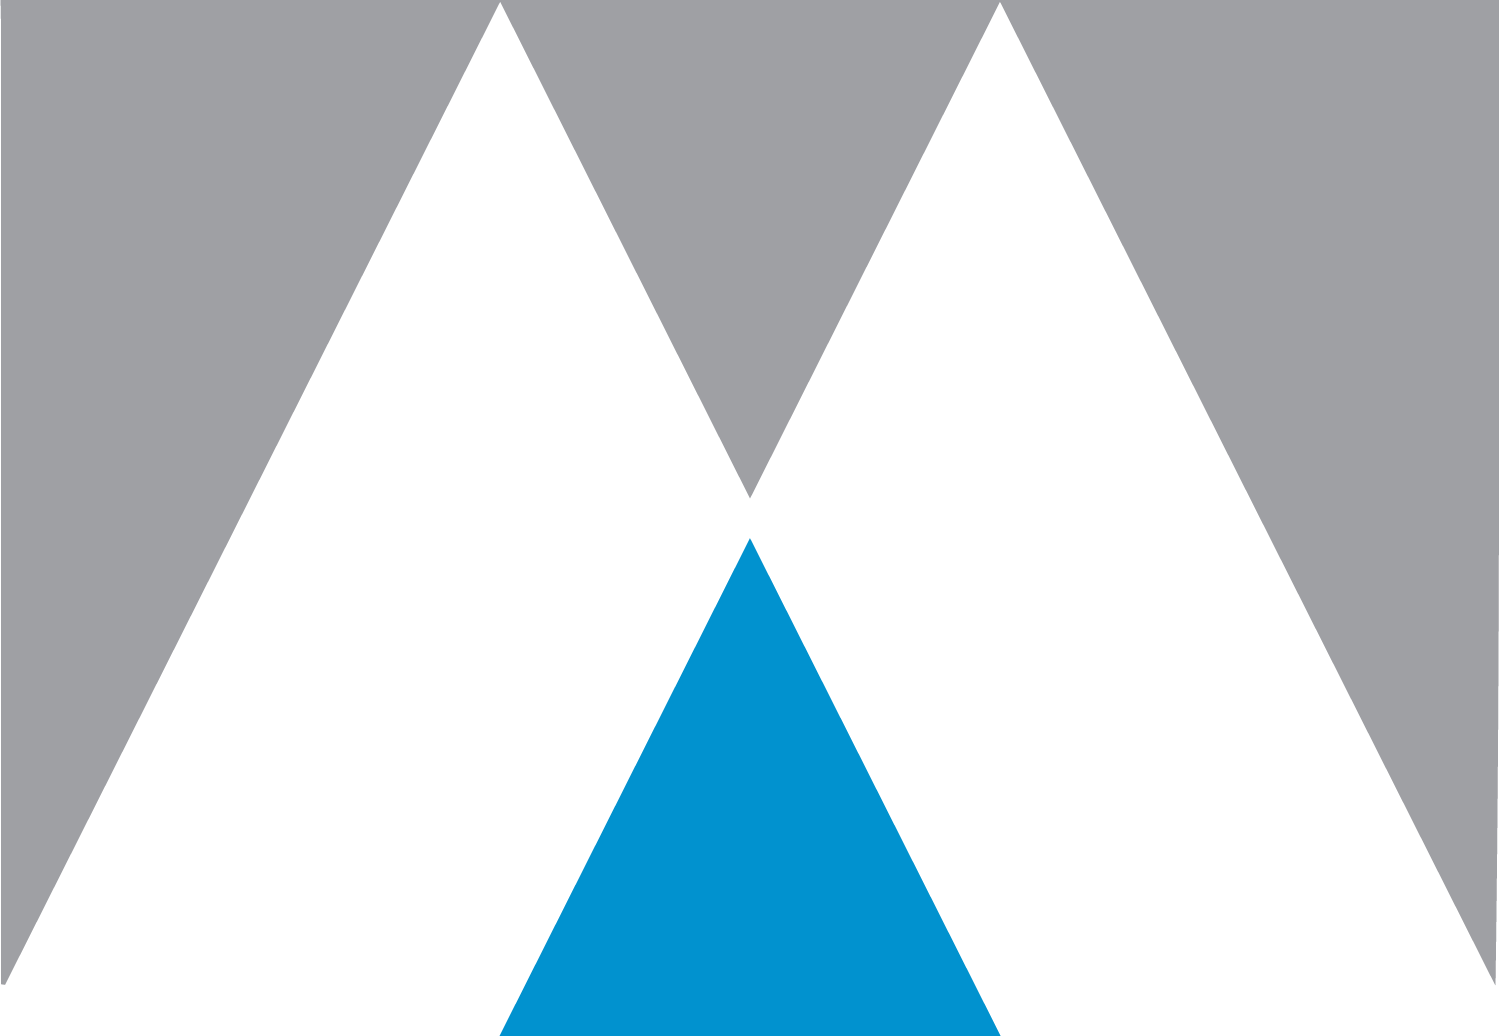 Materion Logo